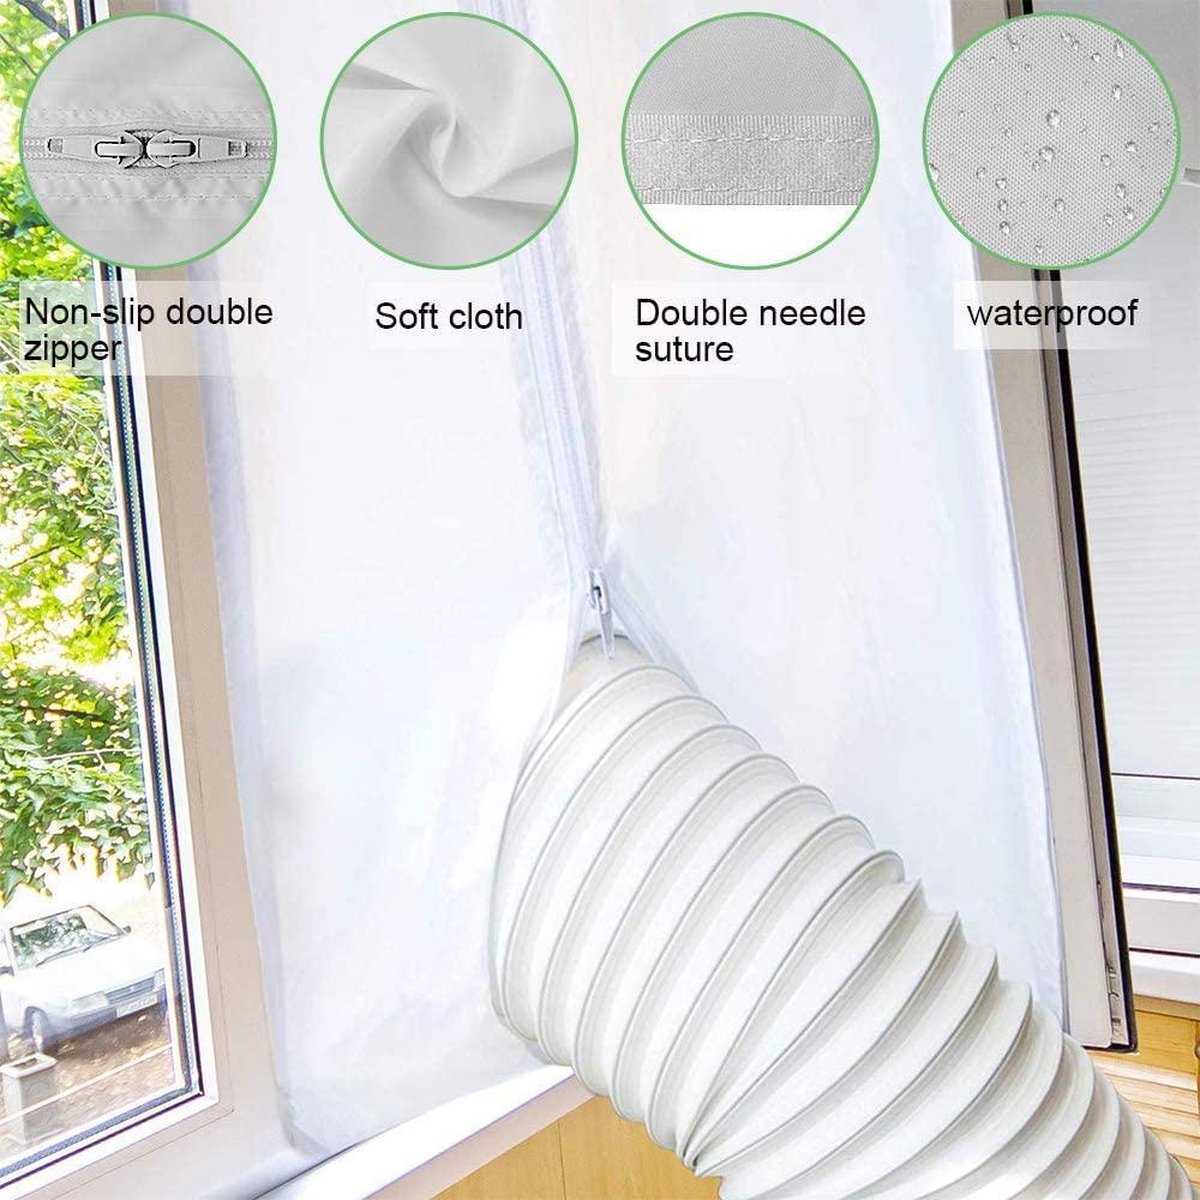 Air 300/400cm verrouillage joint de fenêtre Kit Home Living Room climatisation mobile